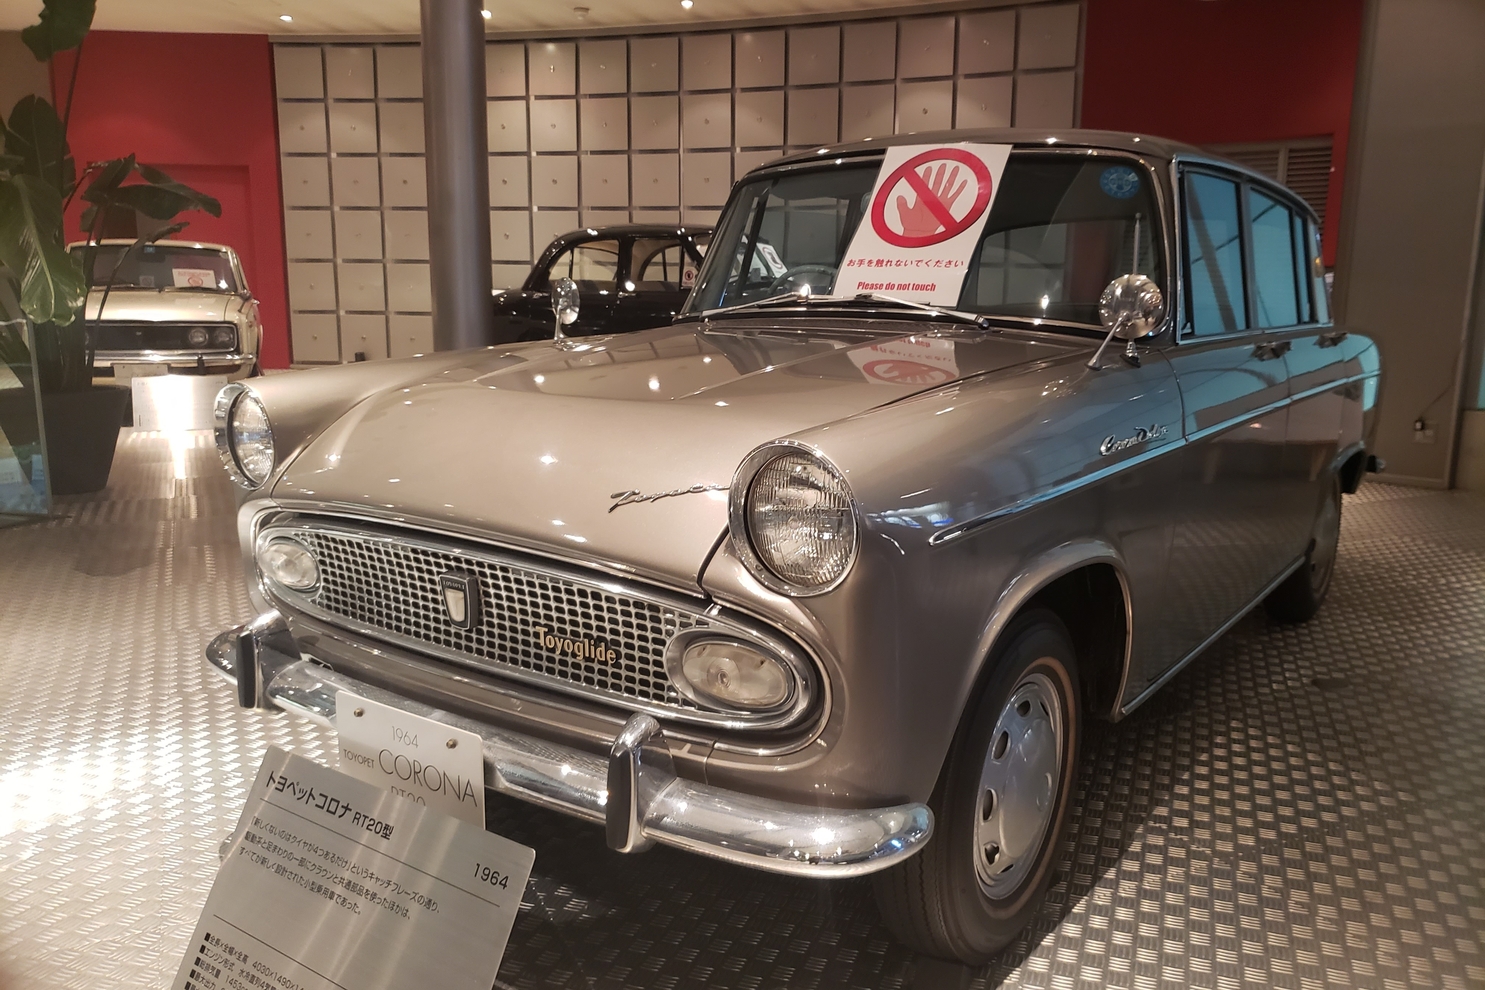 ZAP 旧車展示フロア